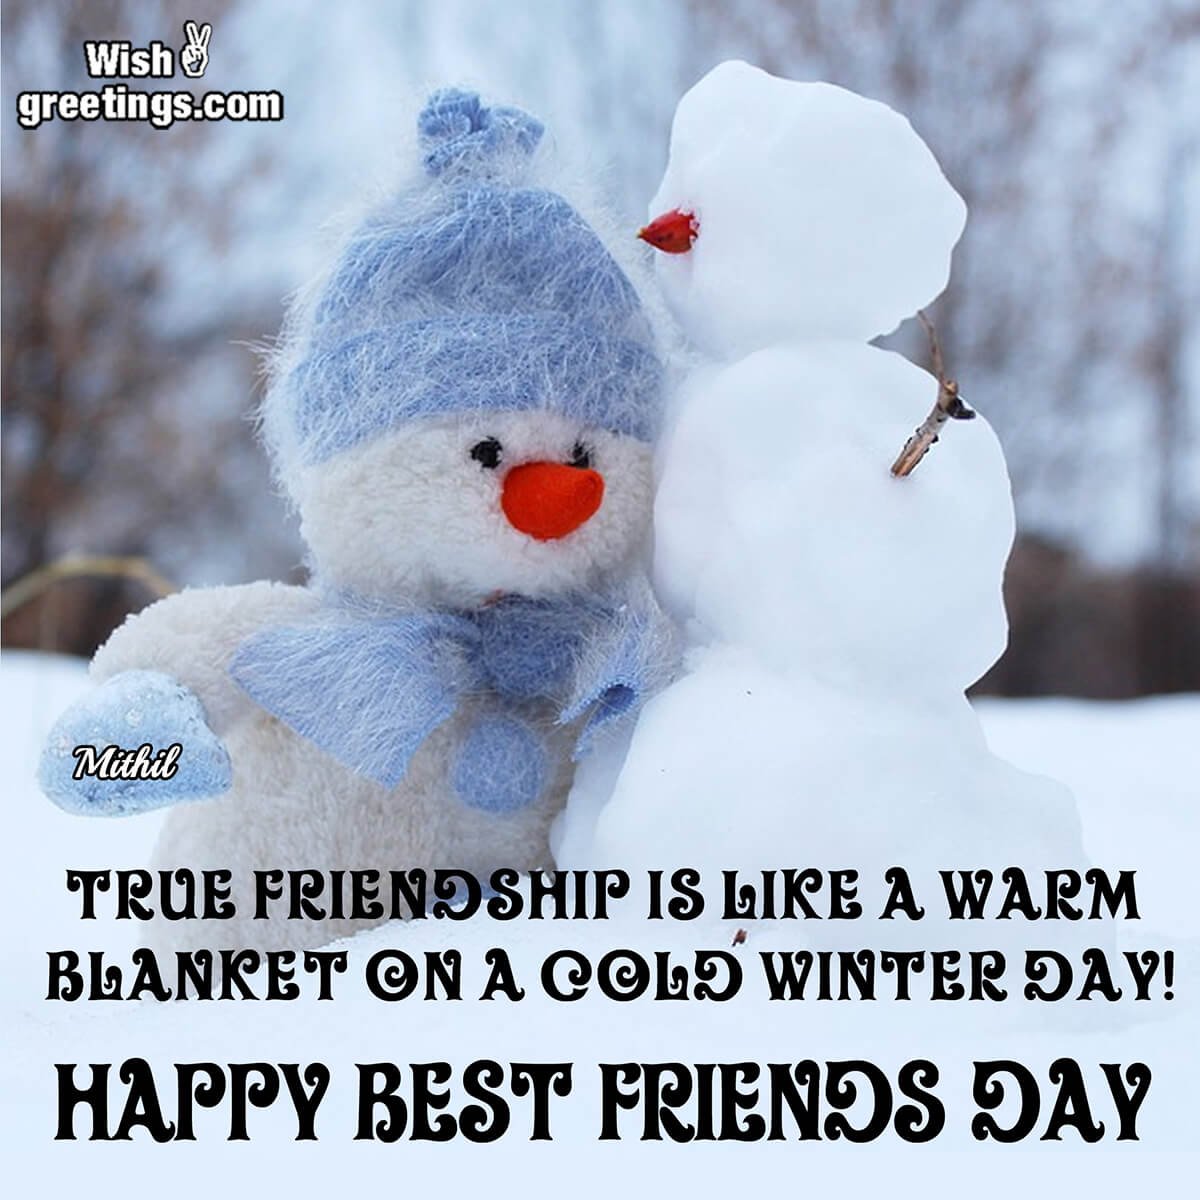 Happy Best Friend’s Day To True Friendship